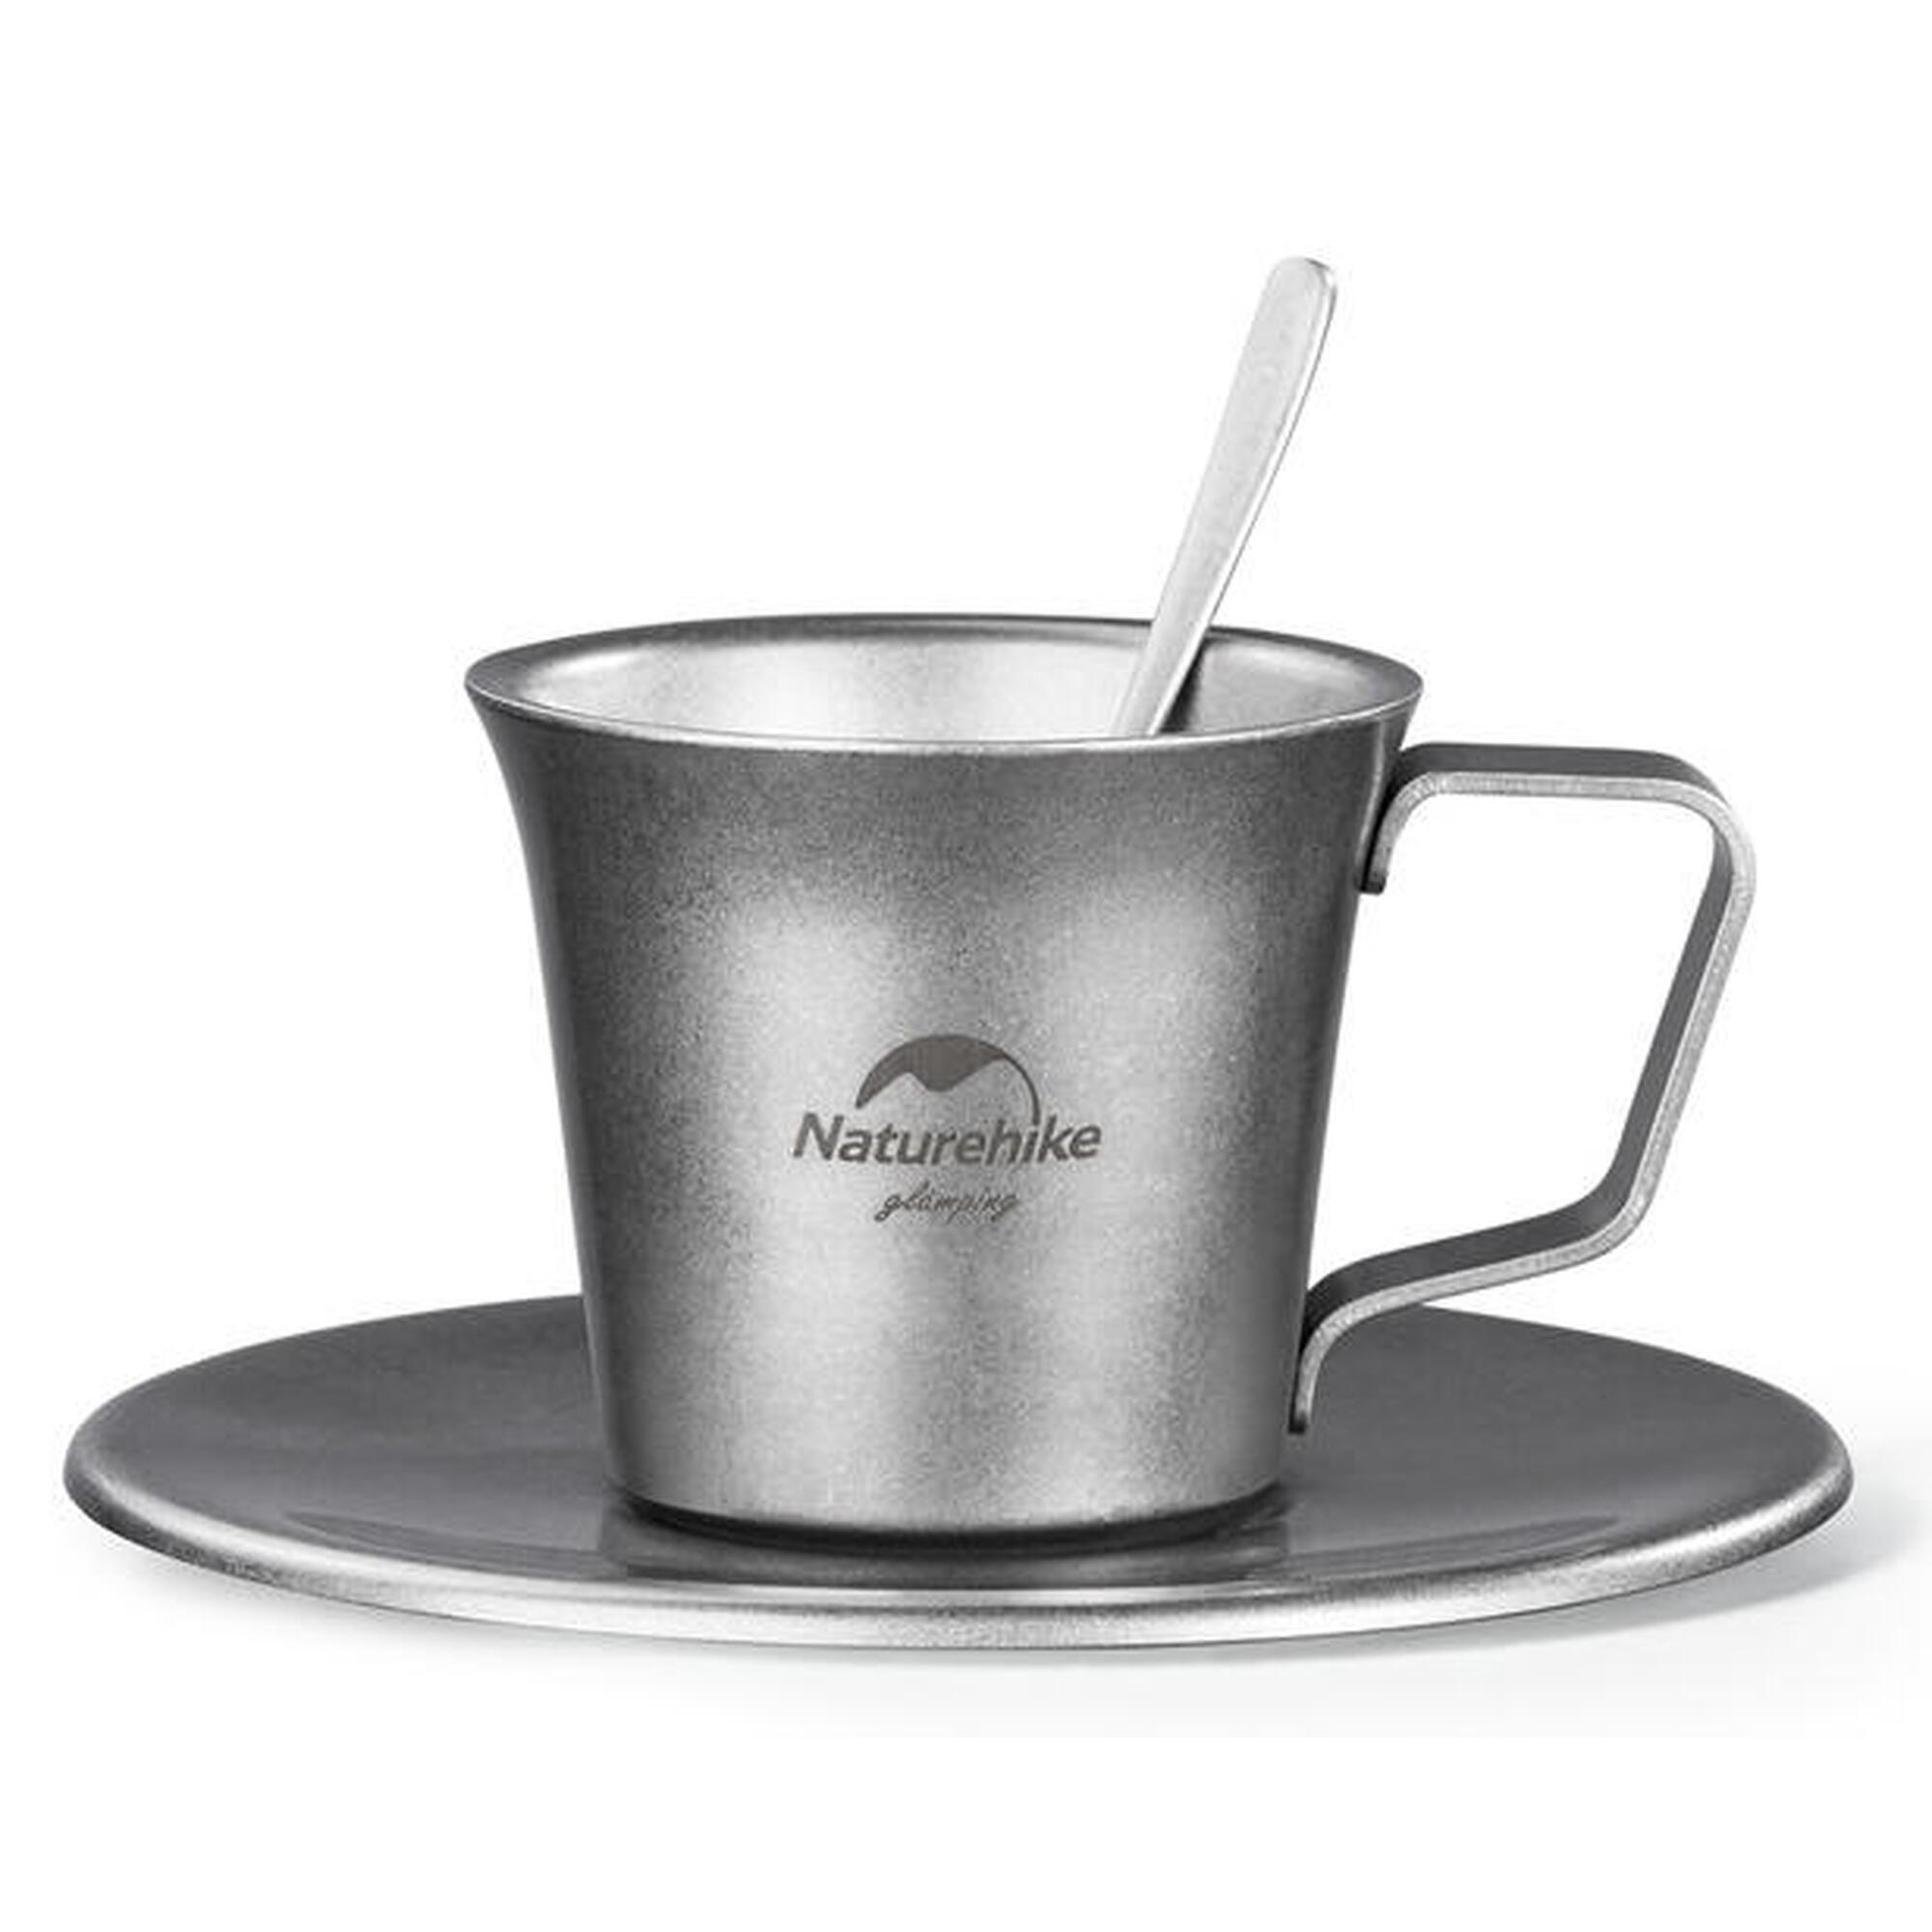 行山不鏽鋼咖啡杯套裝 150ml - 灰色